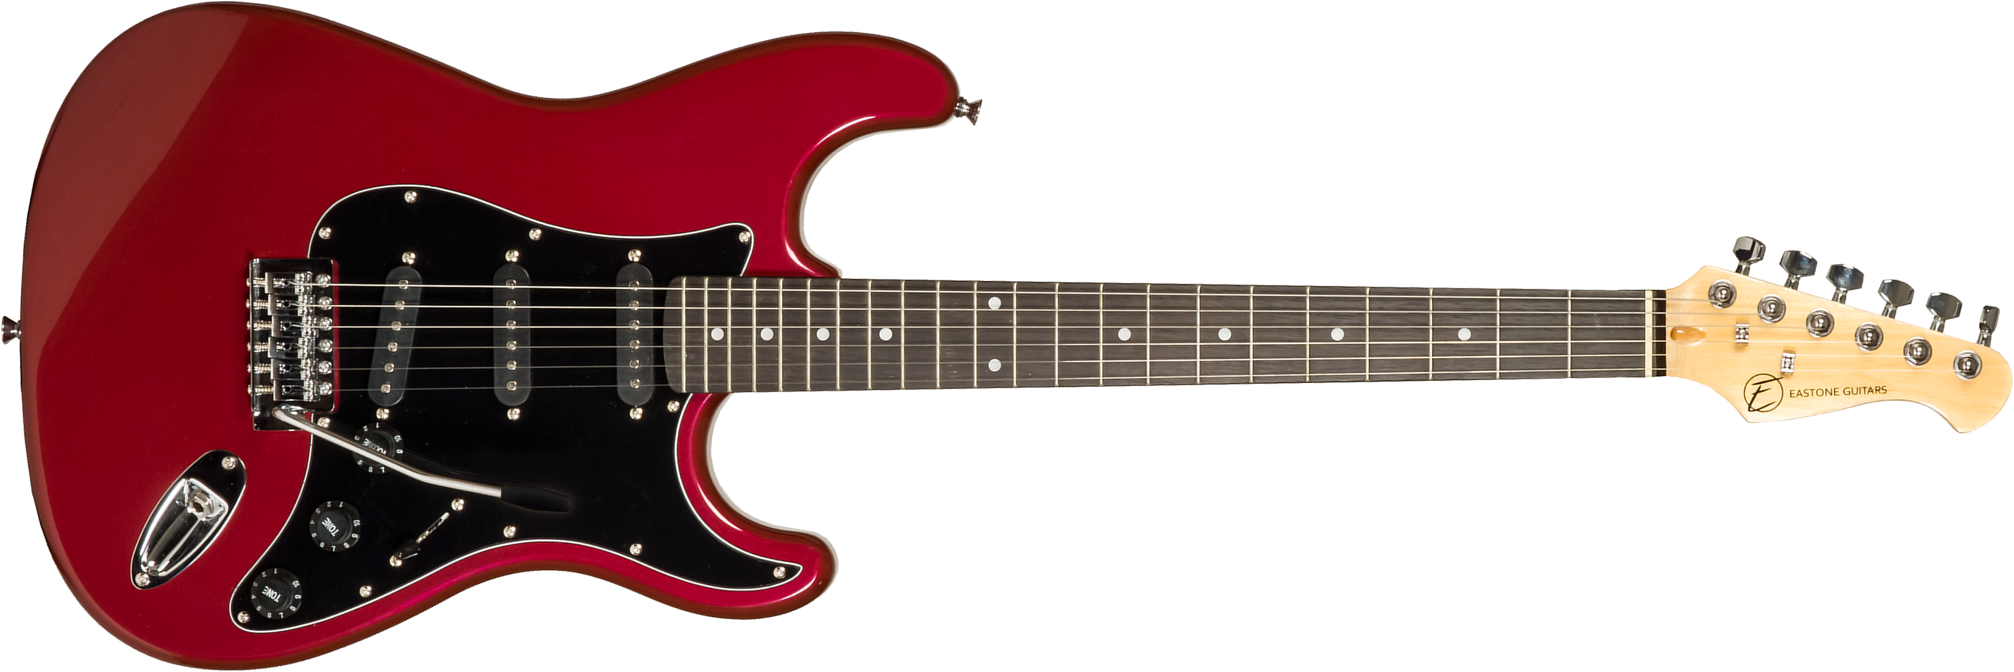 Eastone Str70t 3s Trem Pur - Dark Red - Elektrische gitaar in Str-vorm - Main picture